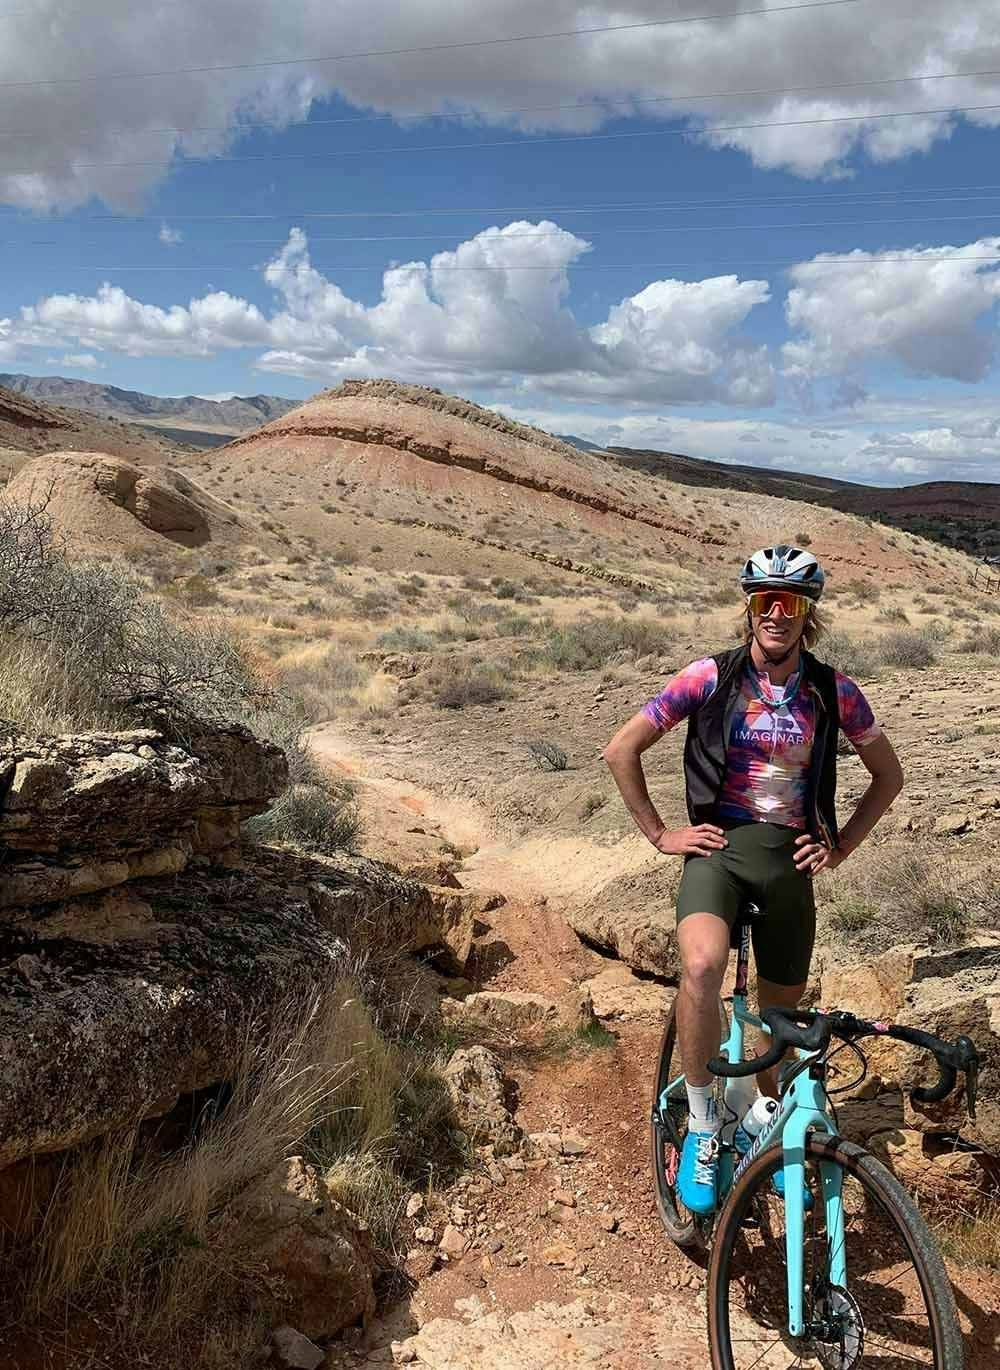 TJ Eisenhart on his gravel bike in the desert